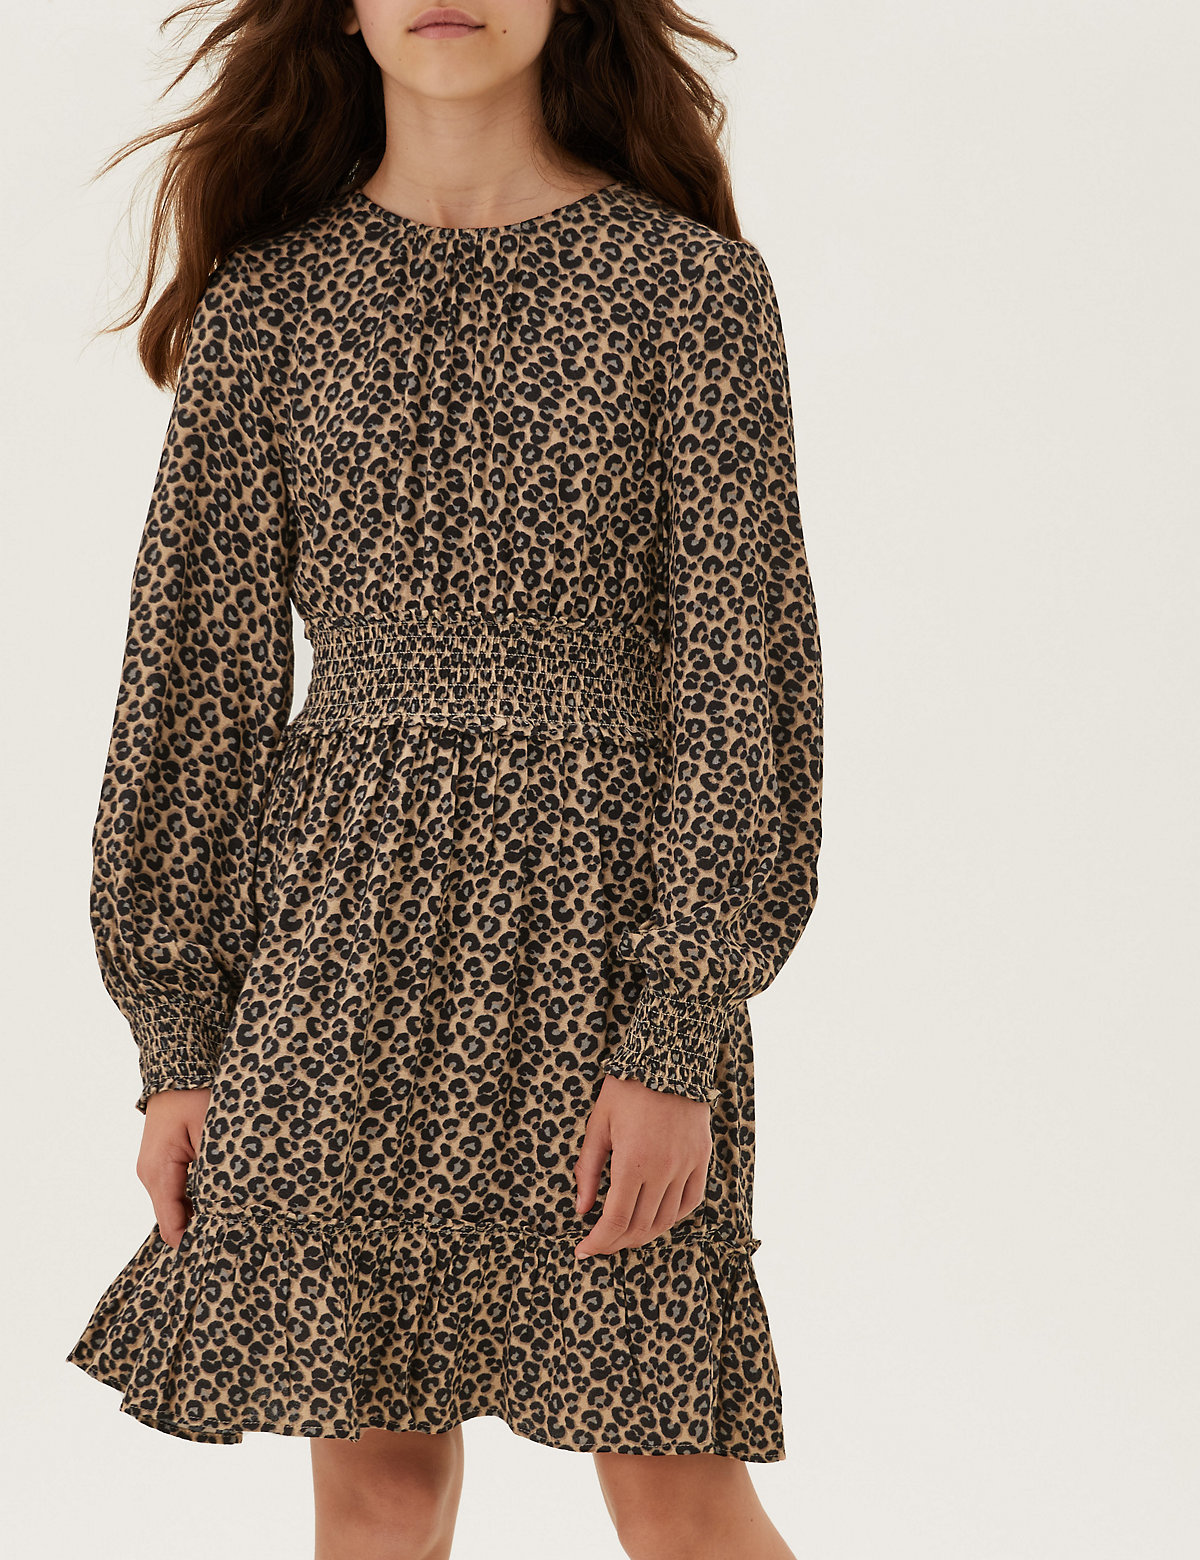 Leopard Spot Print Shirred Dress (6-16 Yrs)